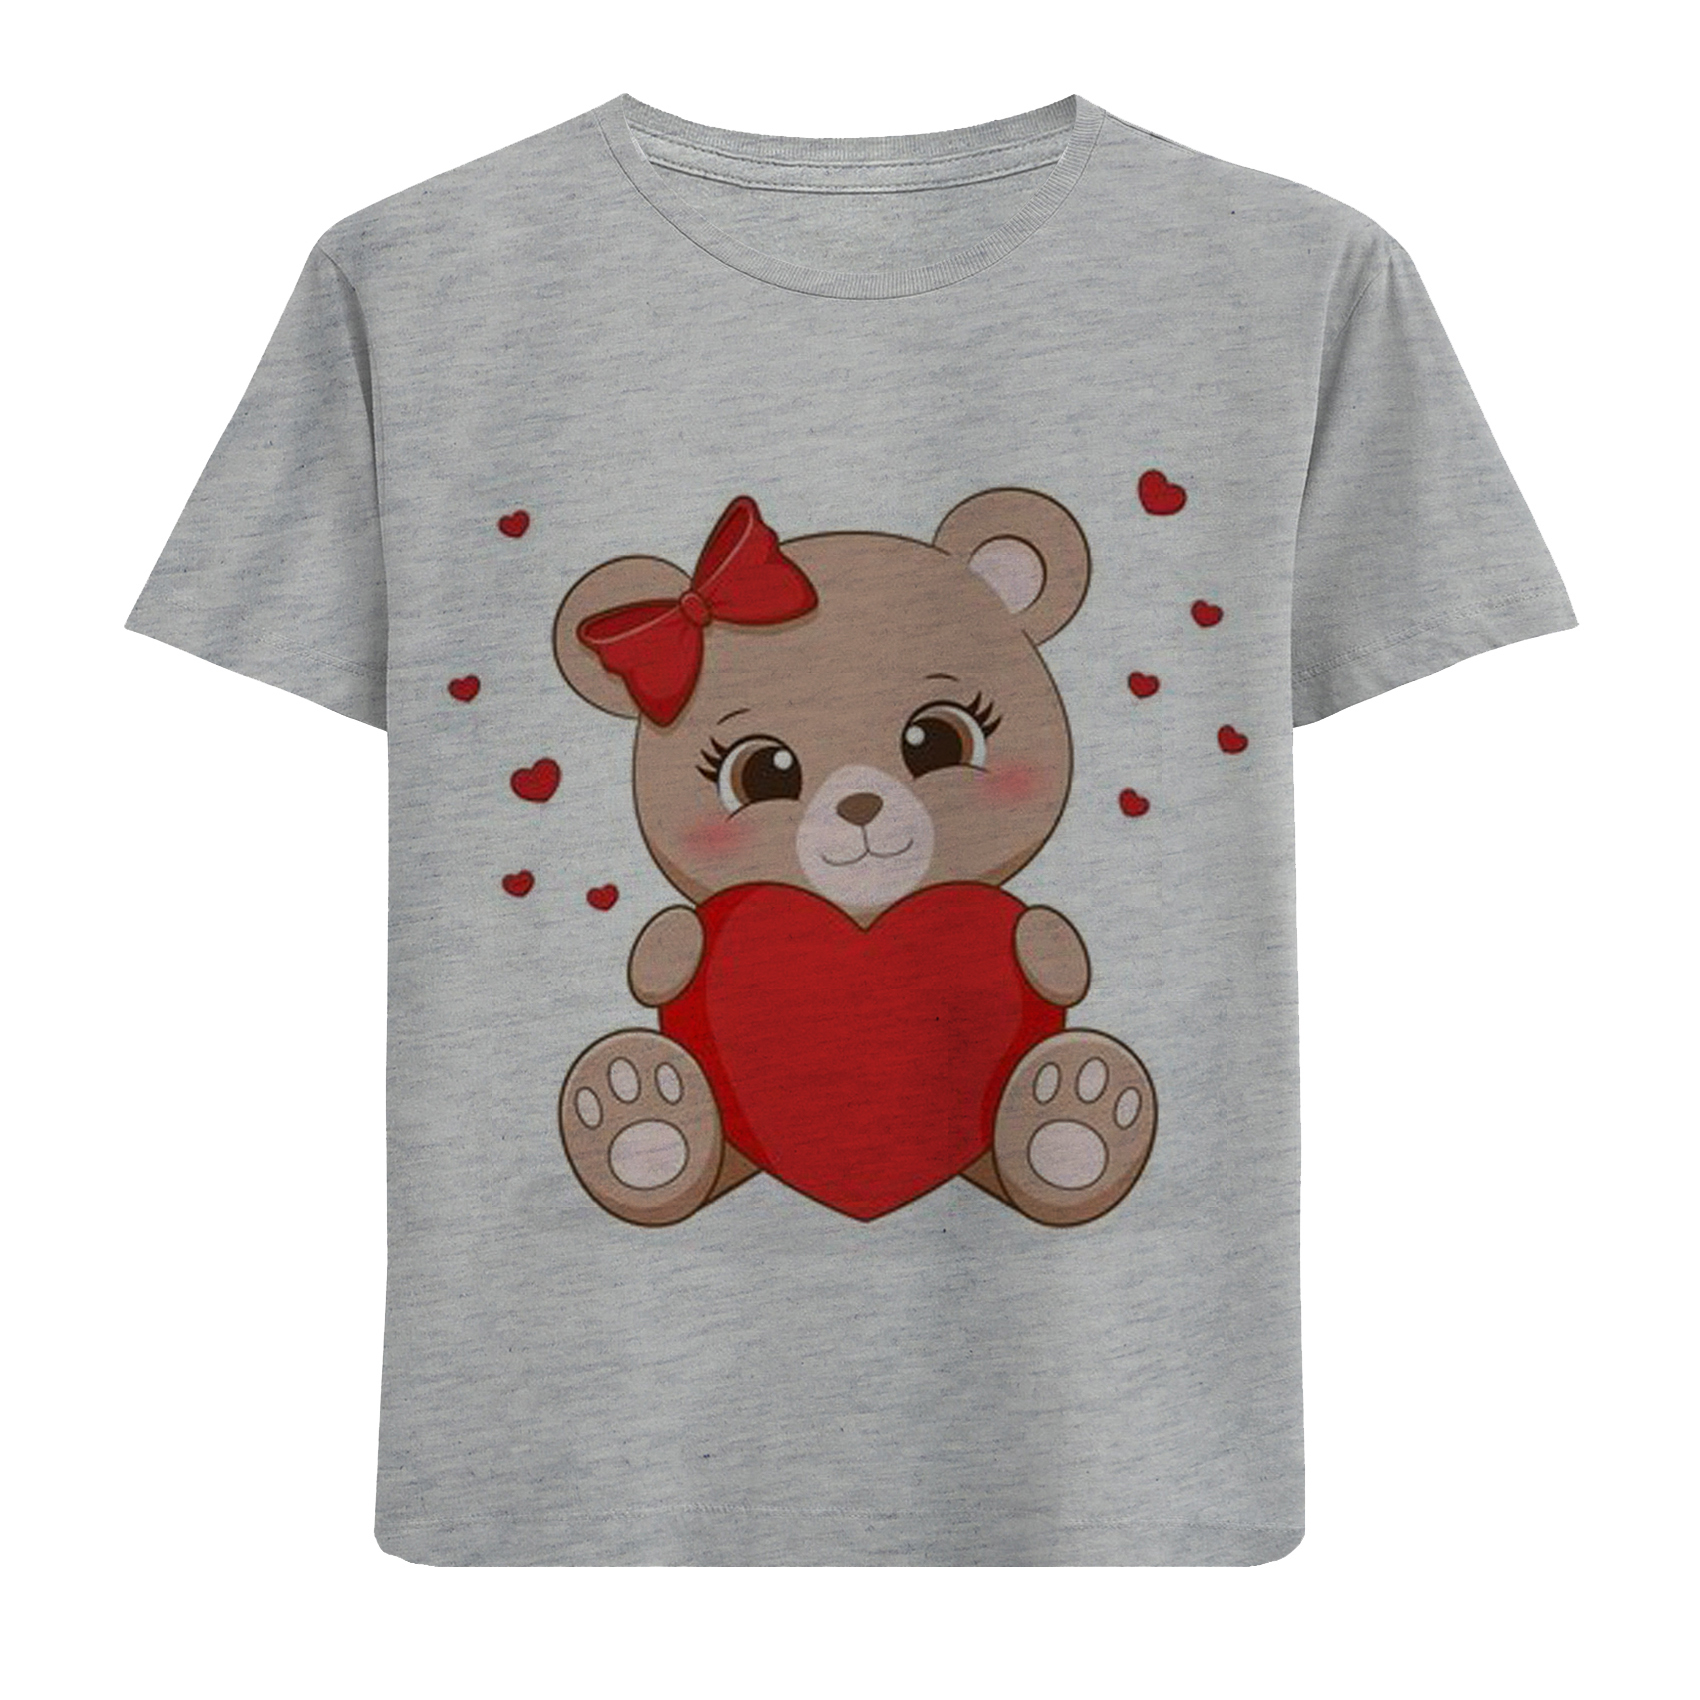 تی شرت آستین کوتاه دخترانه مدل خرس و قلب F549